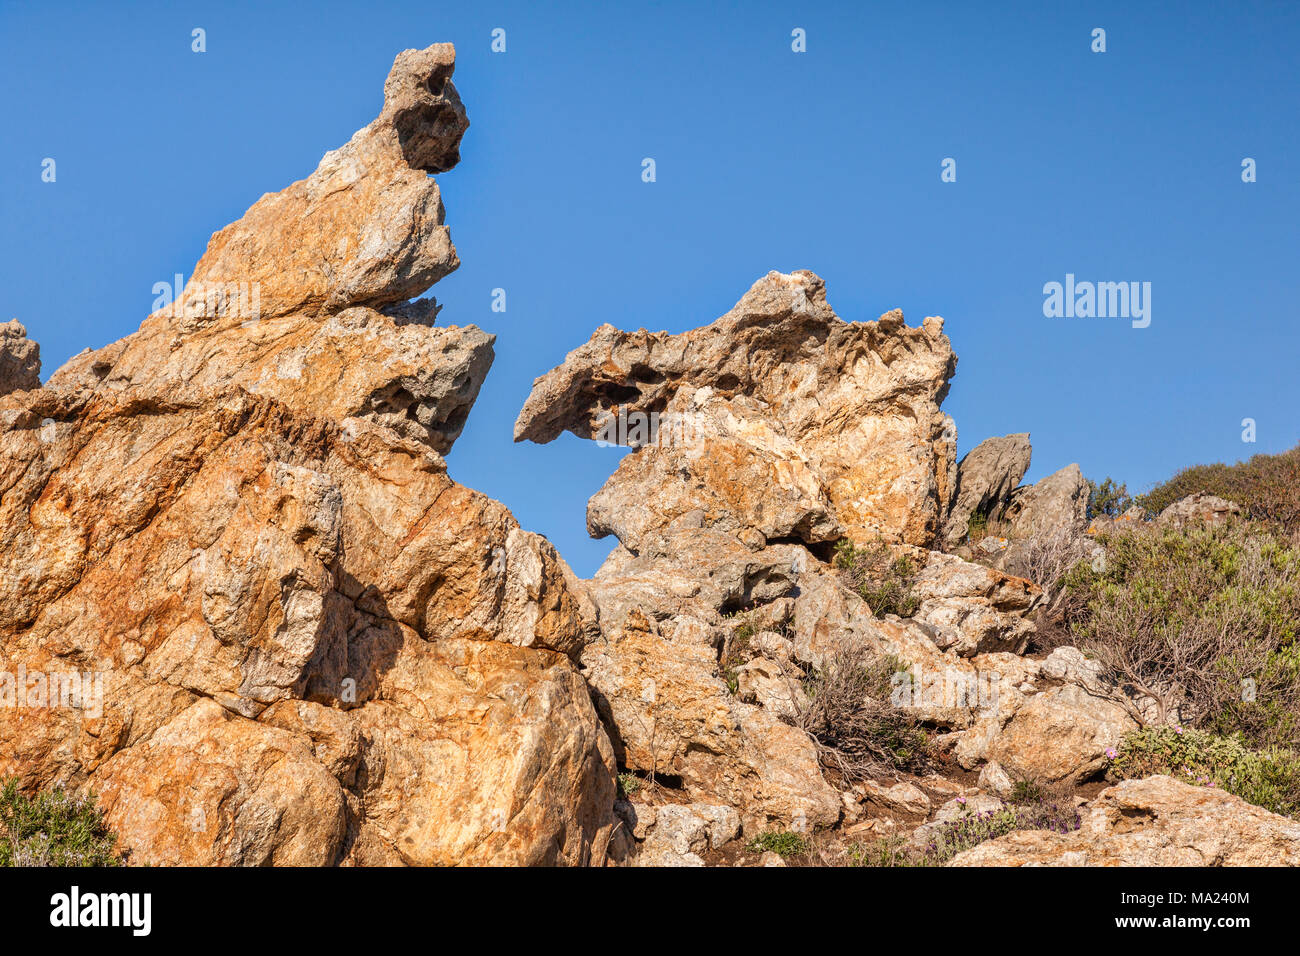 Una delle formazioni rocciose che ha ispirato l'artista Salvador Dali, Cap de Creus, Catalogna, Spagna Foto Stock